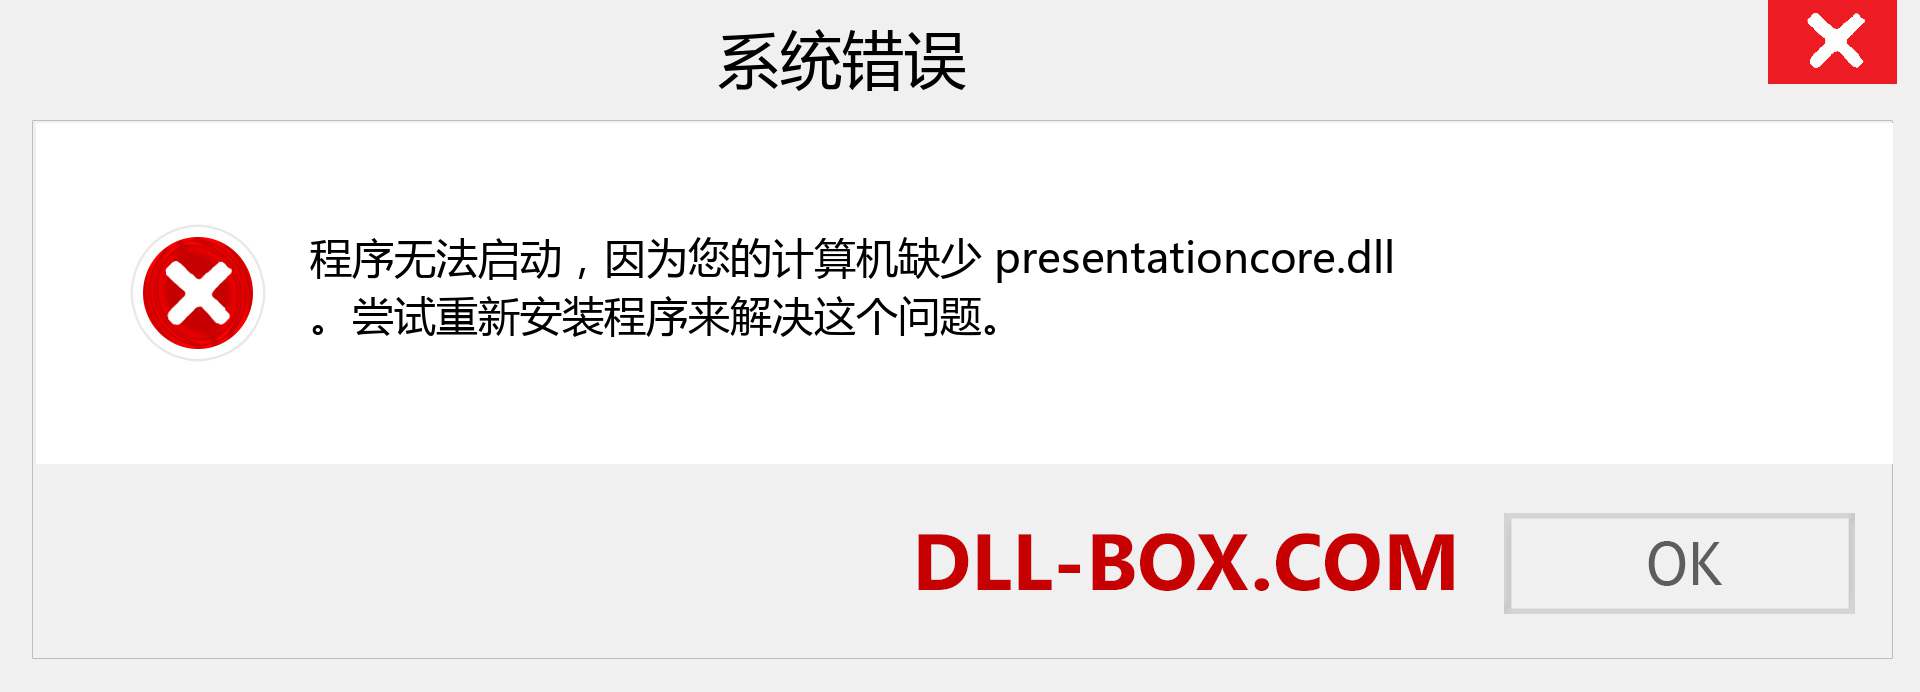 presentationcore.dll 文件丢失？。 适用于 Windows 7、8、10 的下载 - 修复 Windows、照片、图像上的 presentationcore dll 丢失错误